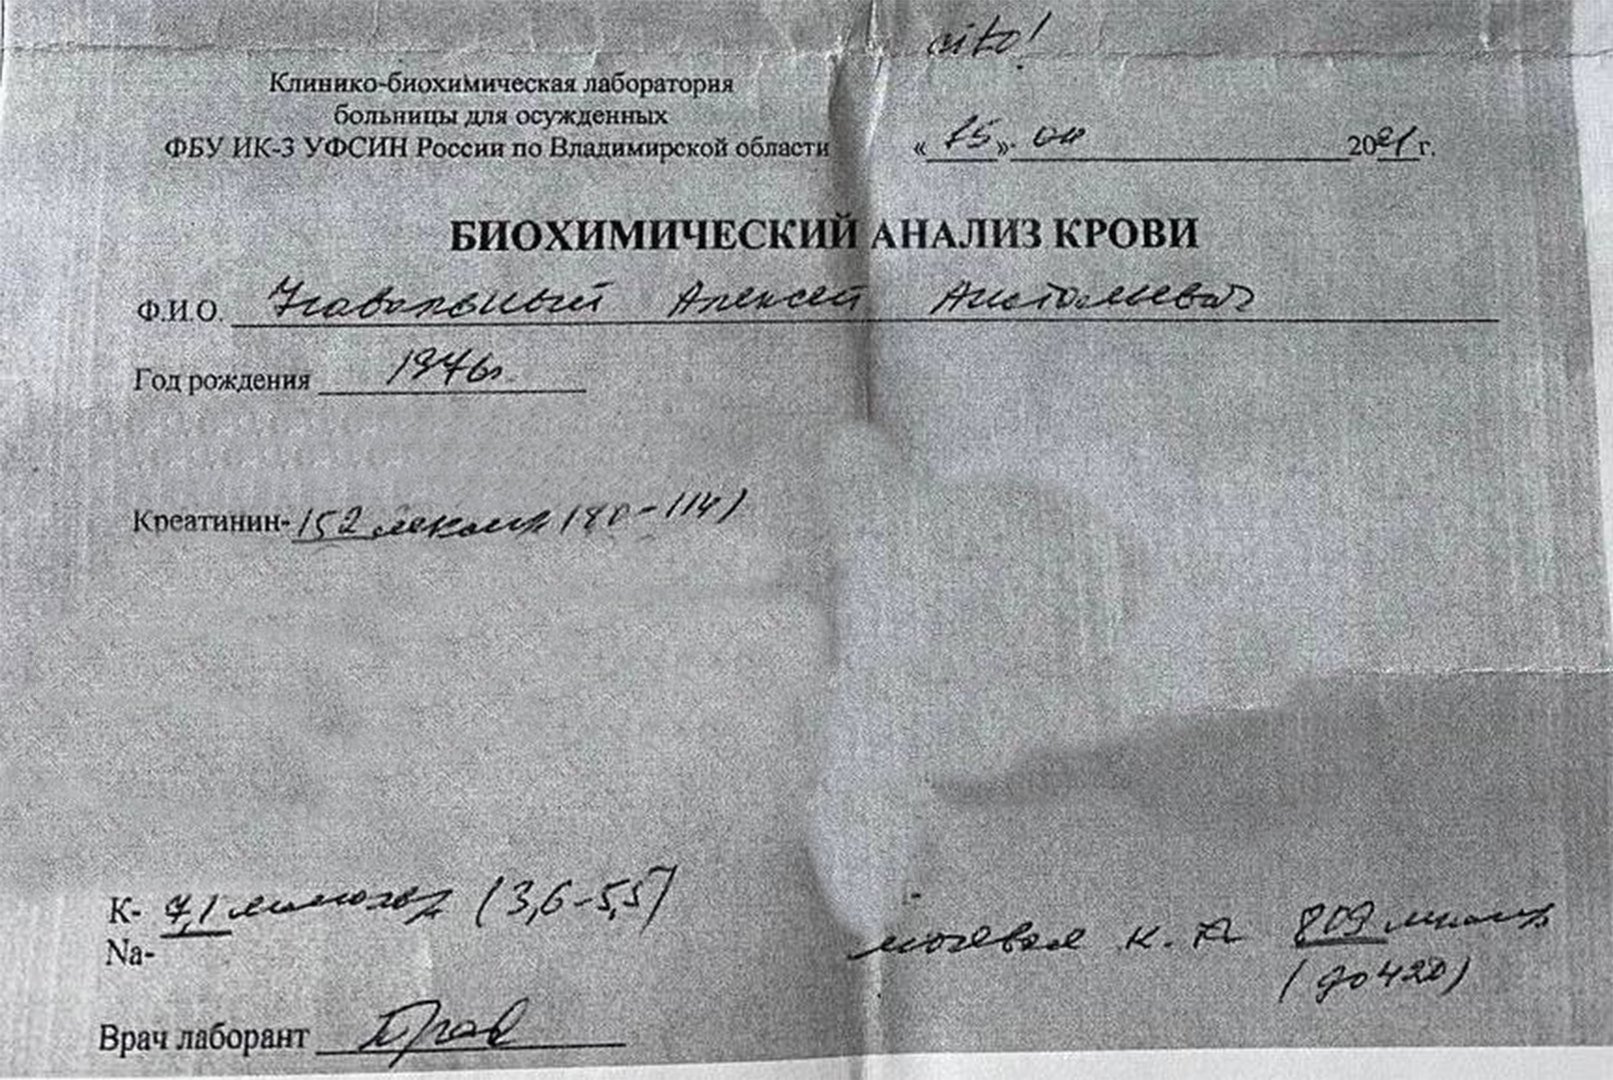 Ксерокопия результатов анализа крови Алексея Навального на фоне голодовки в ИК-2. Фото из фейсбука Ярослава Ашихмина